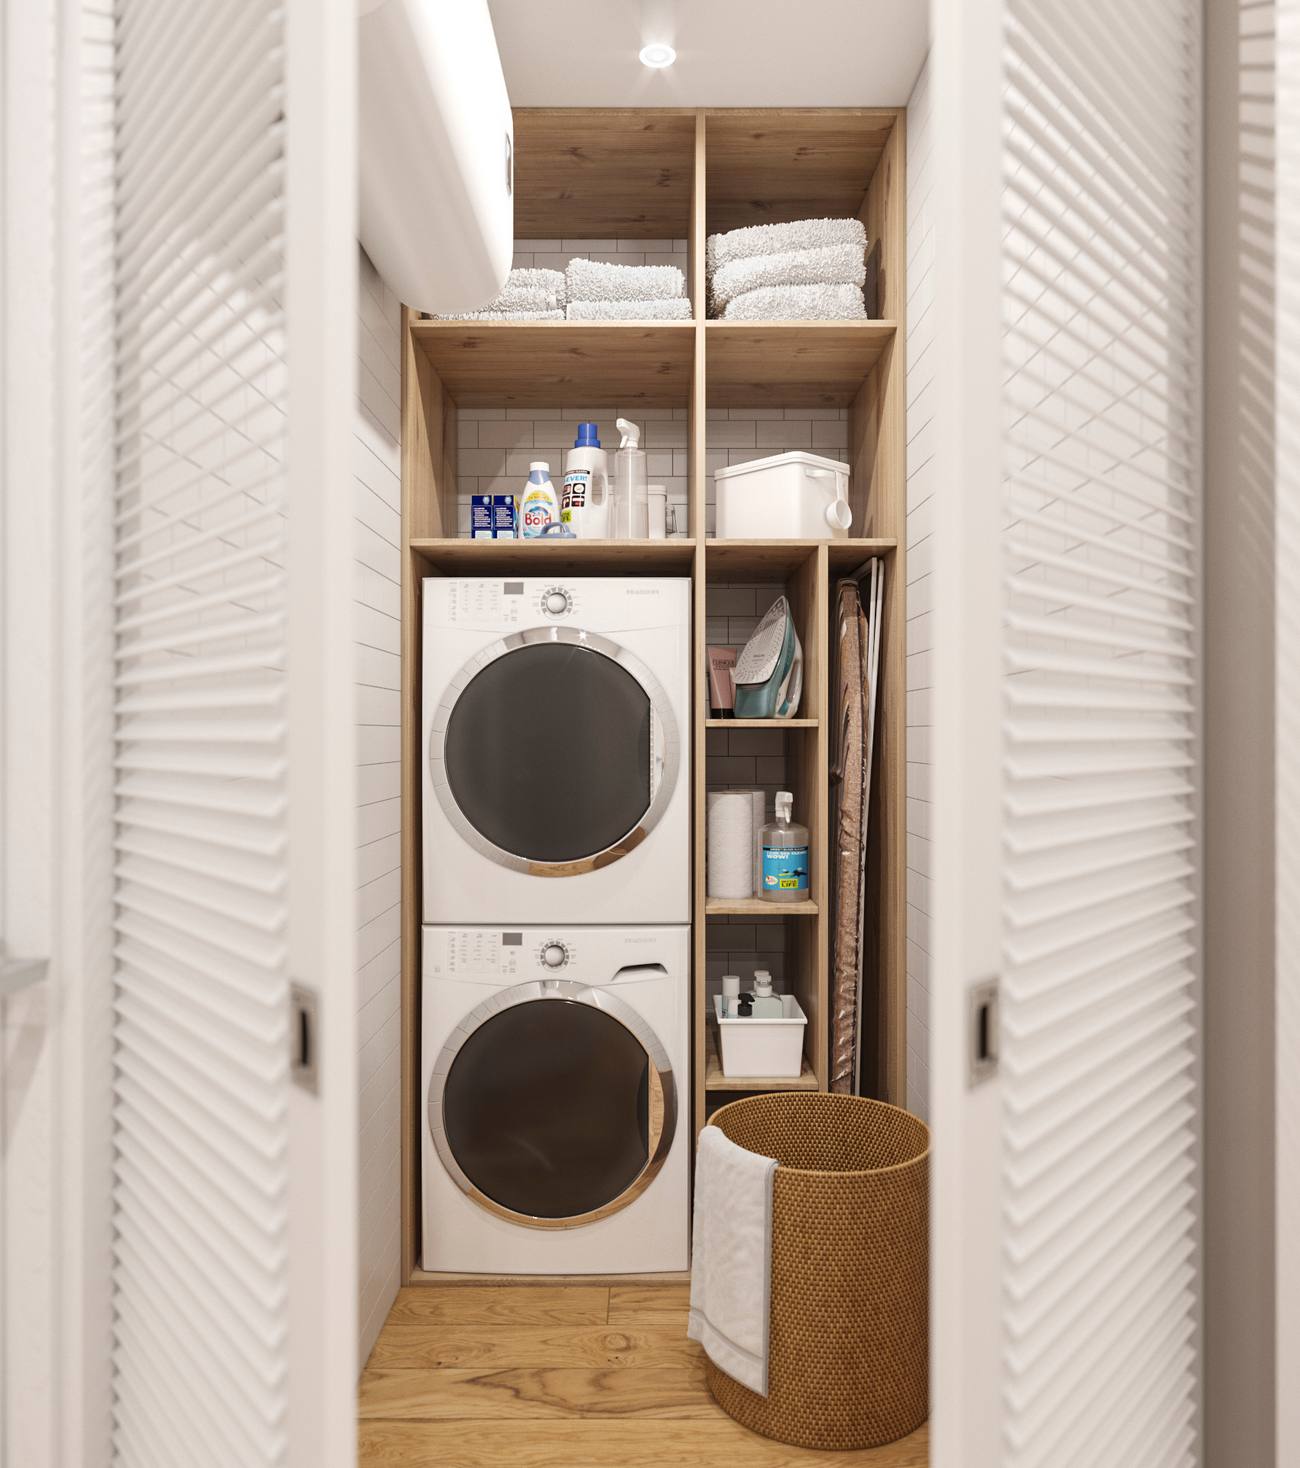 Phòng giặt là bố trí sau cánh cửa trắng, bao gồm kệ mở bằng gỗ nhiều ngăn. Máy giặt và máy sấy được xếp chồng lên nhau, tấm ván để là quần áo được gấp gọn, cùng một số vật dụng khác được sắp đặt khoa học, dễ dàng tìm kiếm khi cần sử dụng.